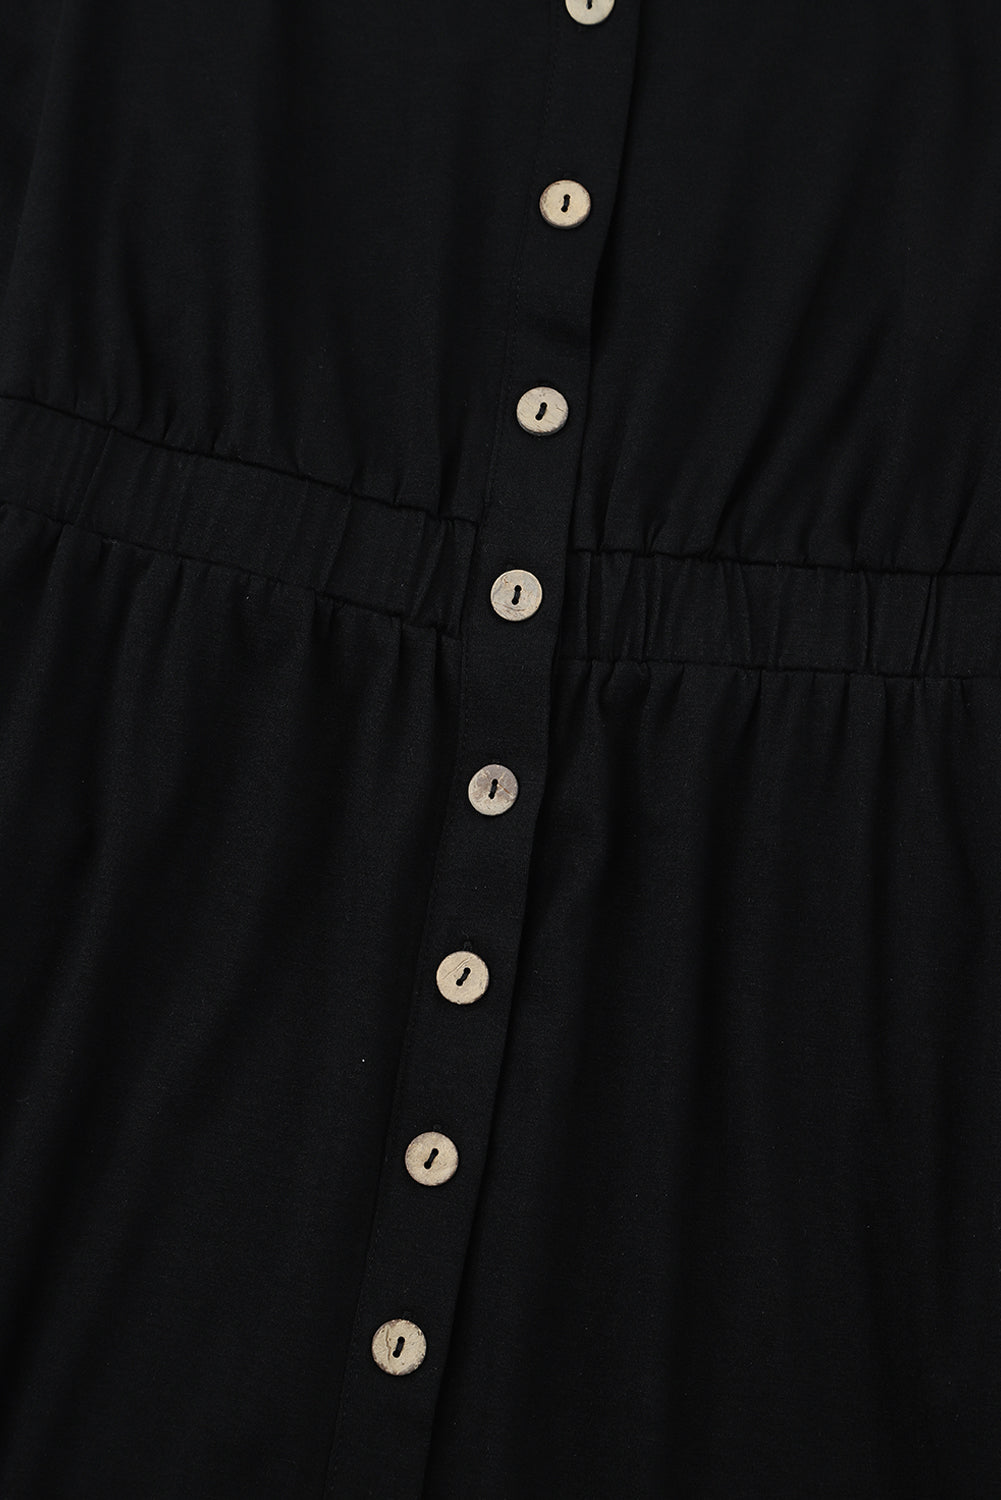 Black Button Up High Waist Long Sleeve Dress